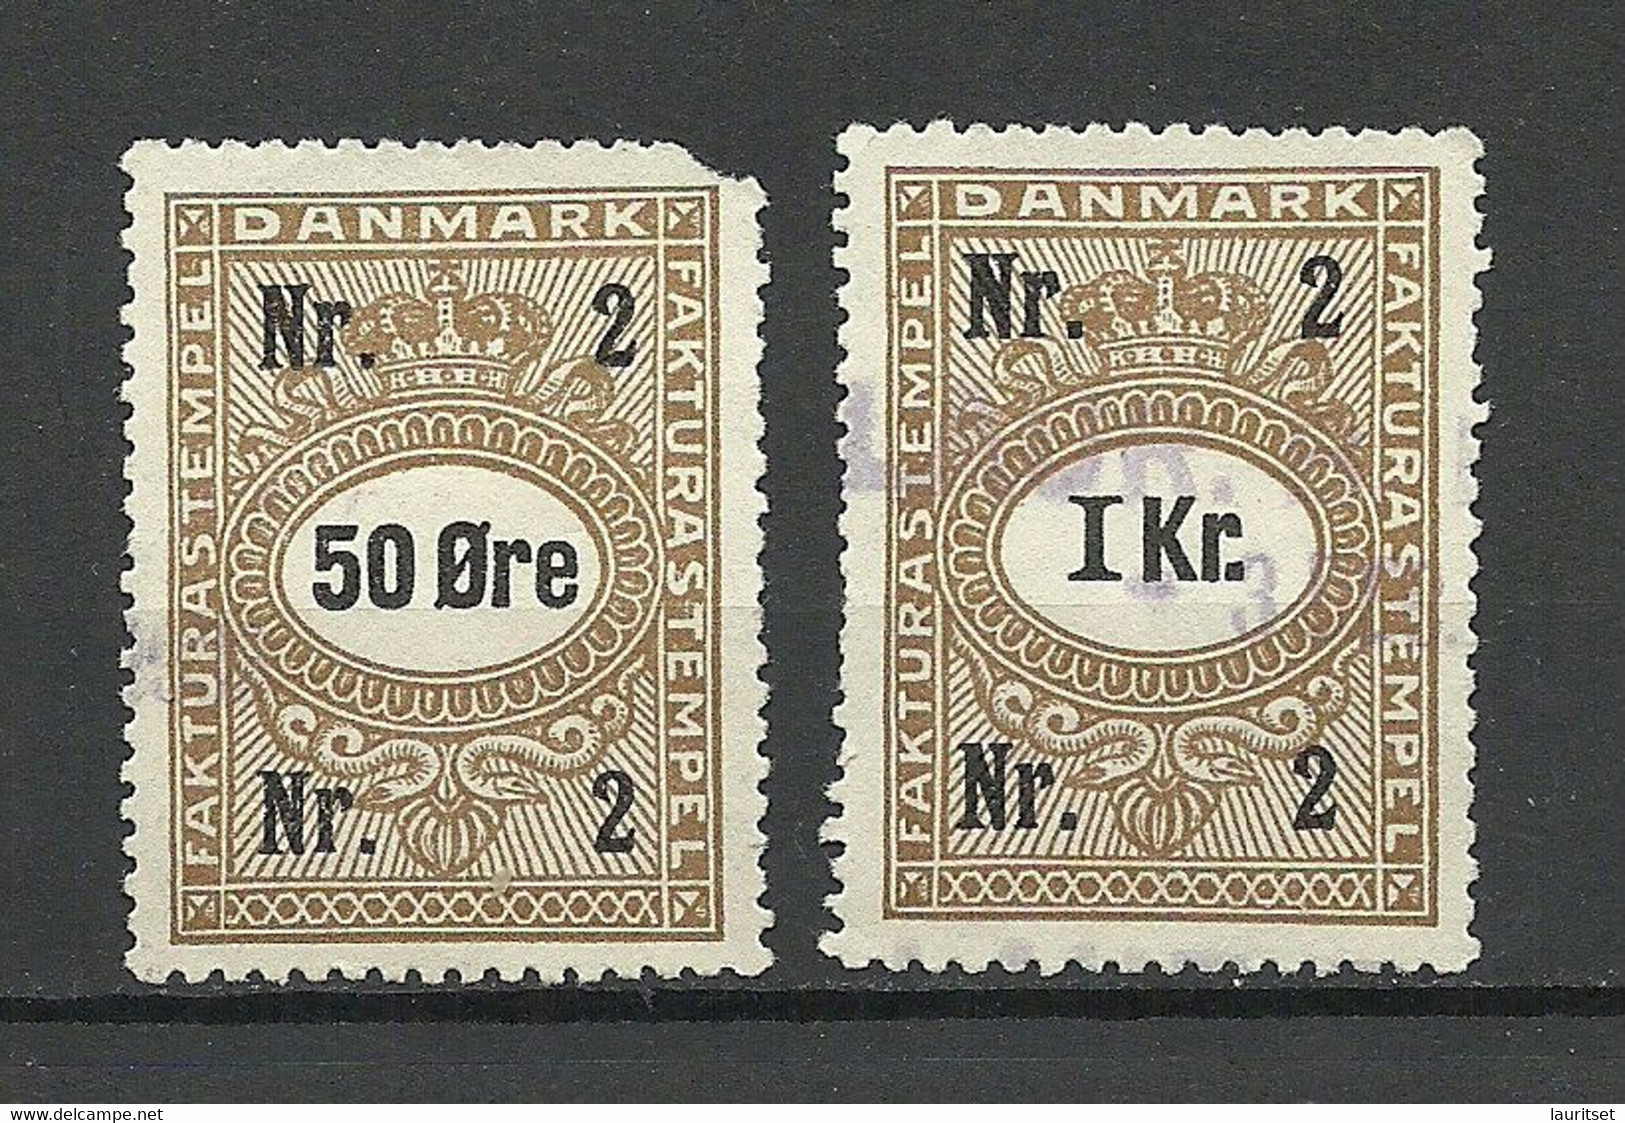 DENMARK Dänemark Stempelmarken Revenue 50 Öre & 1 Krone O - Revenue Stamps